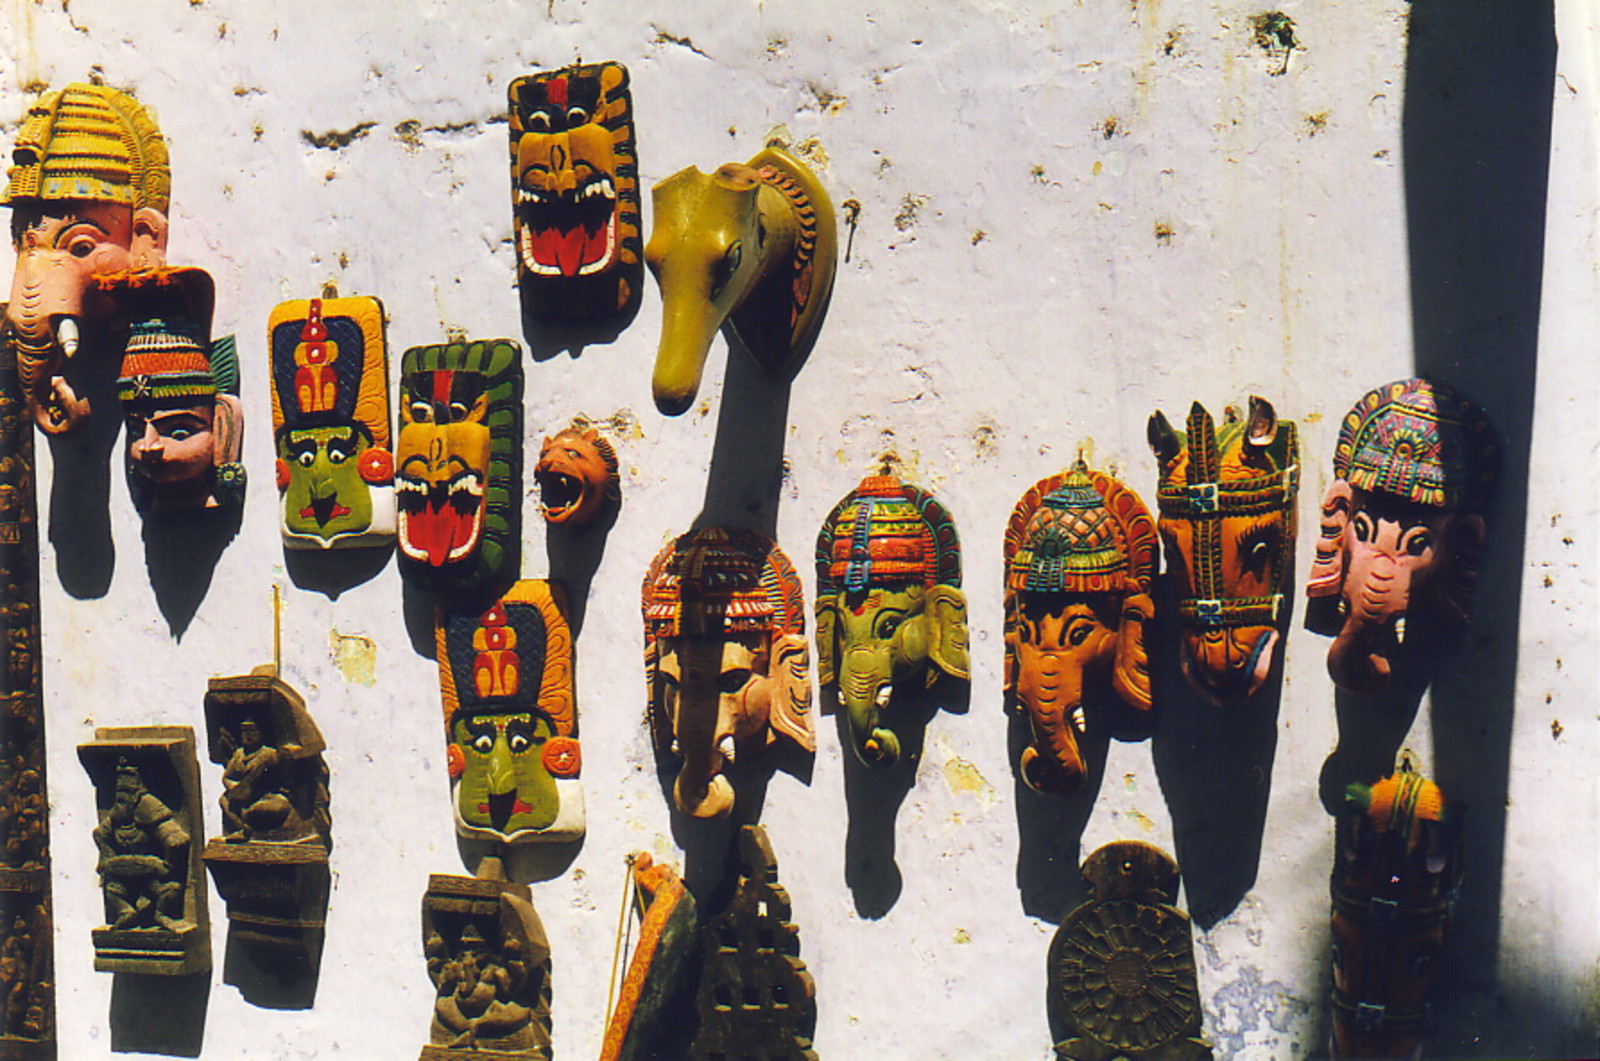 Masks of Ganesh and Kathkali dancers